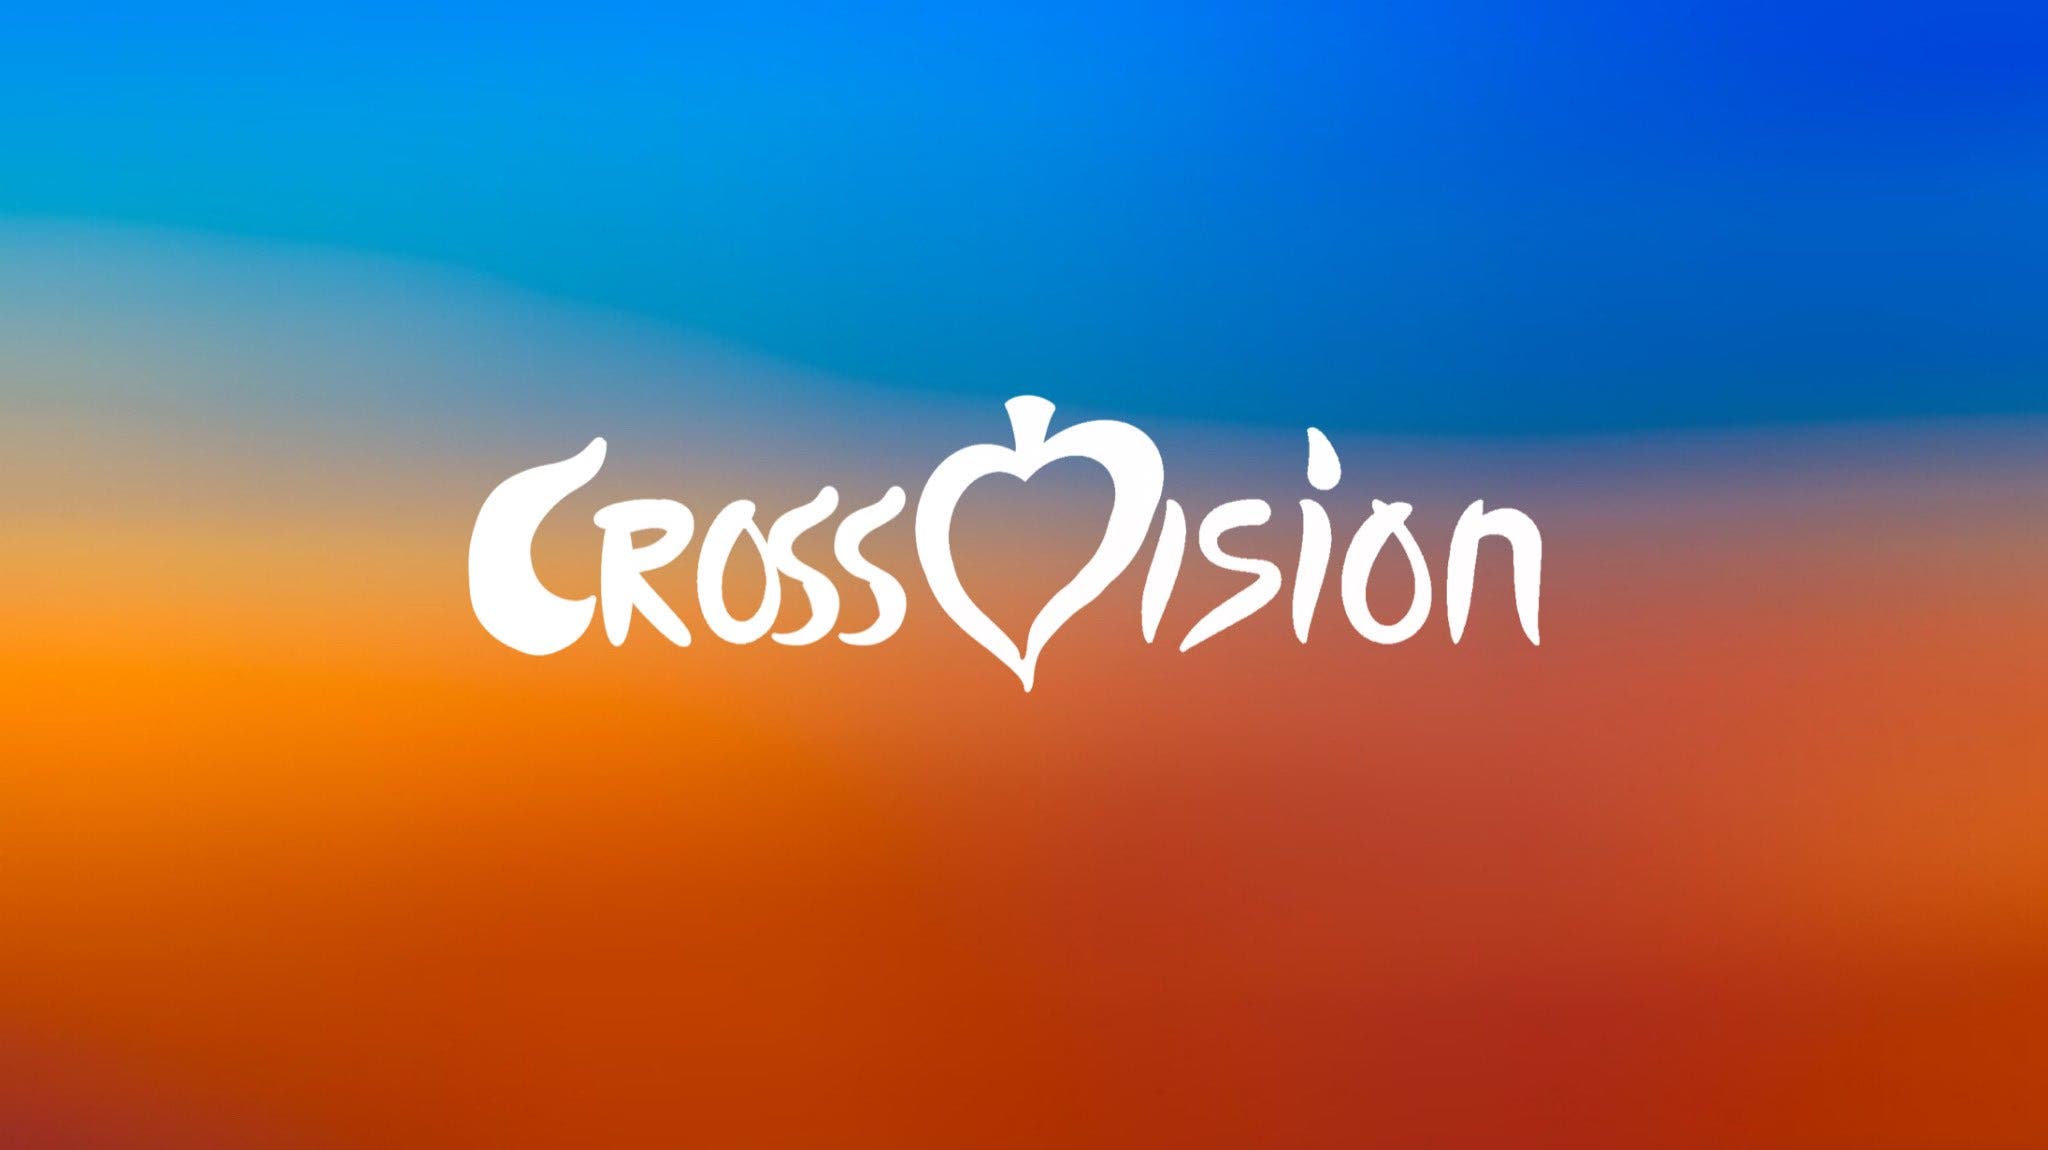 La segunda edición de CrossVision, el evento de Animal Crossing inspirado en Eurovisión, se celebrará en mayo